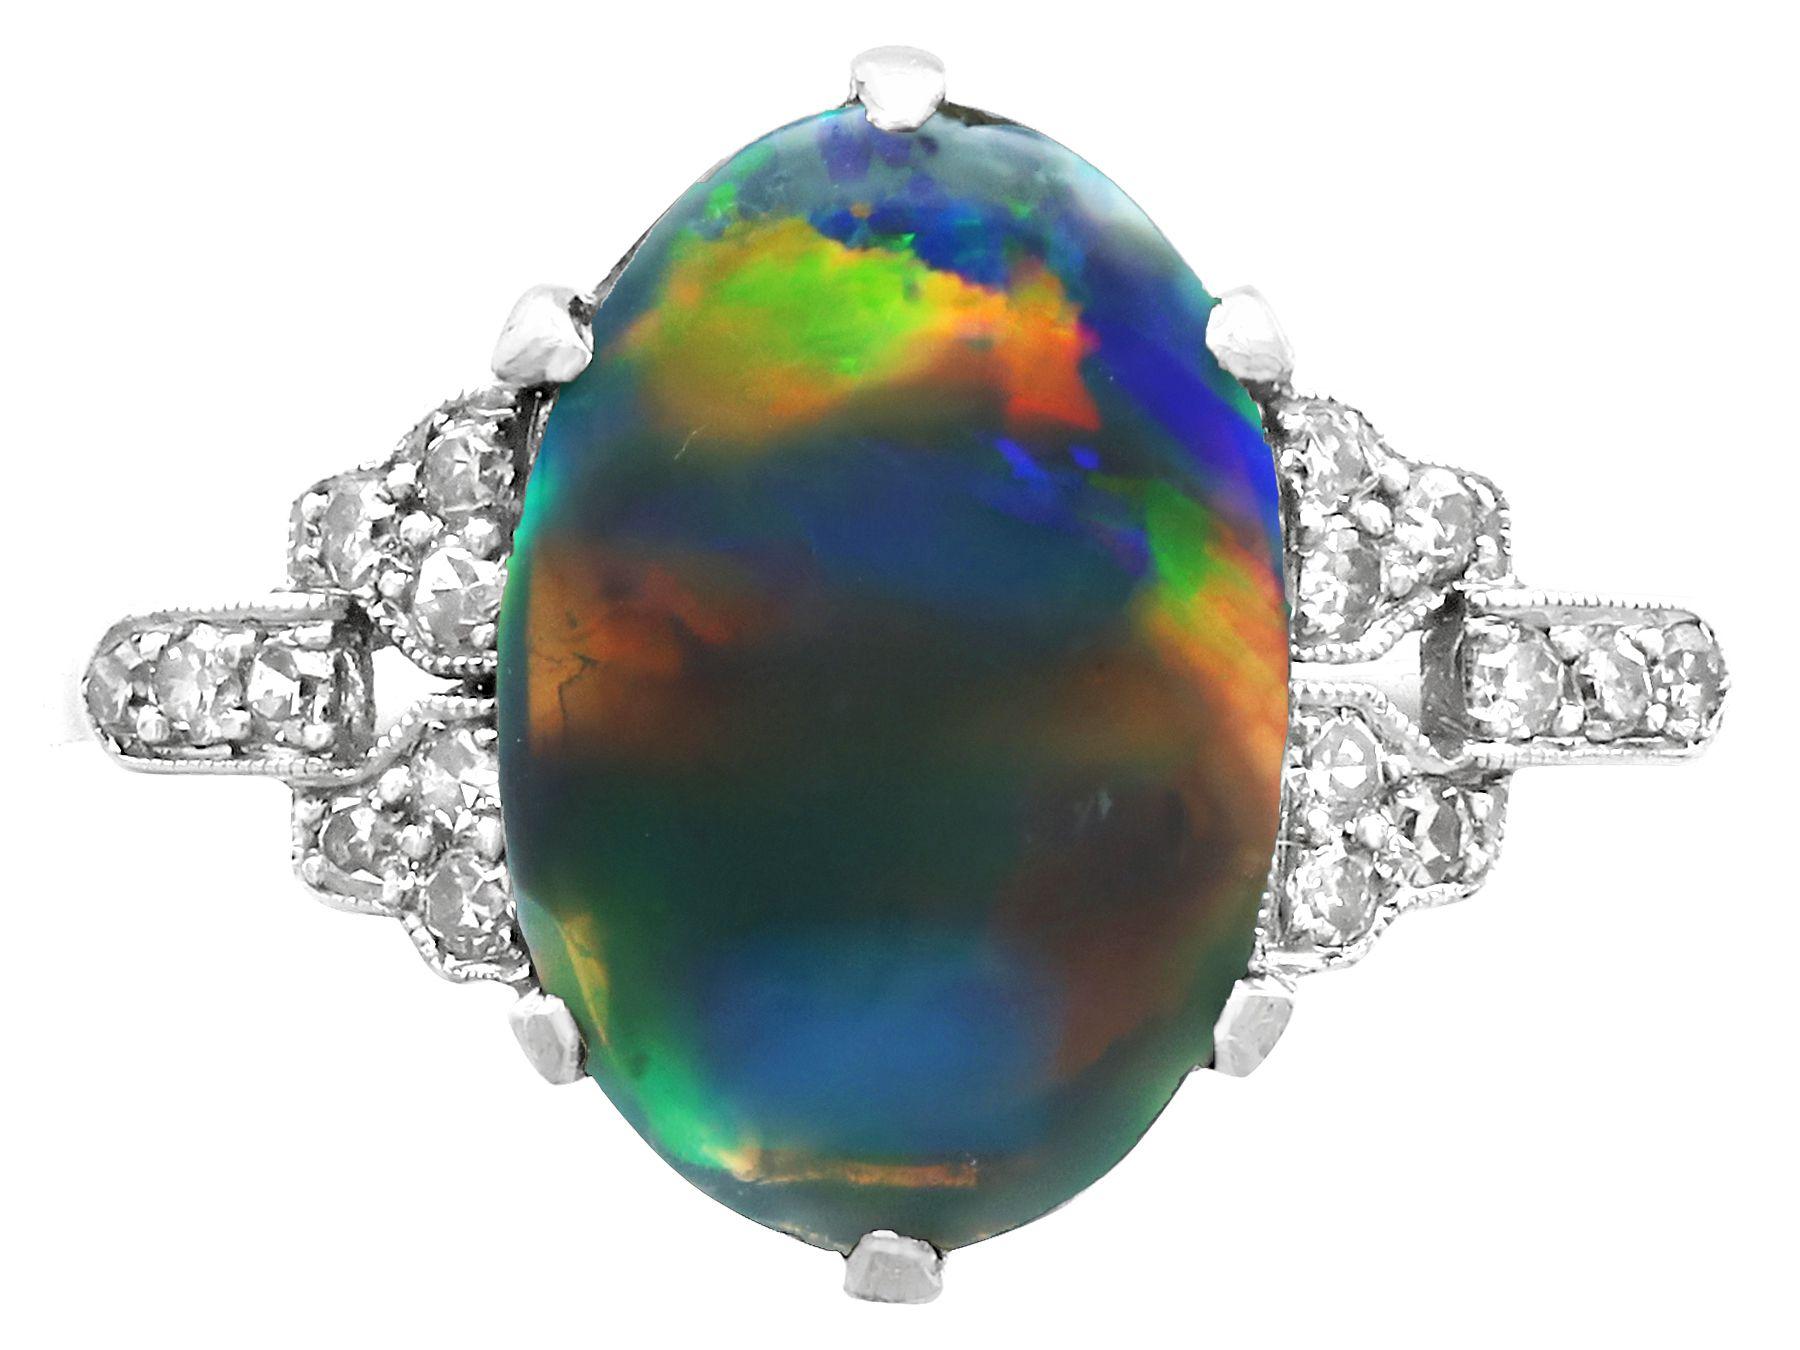 black opal ring vintage